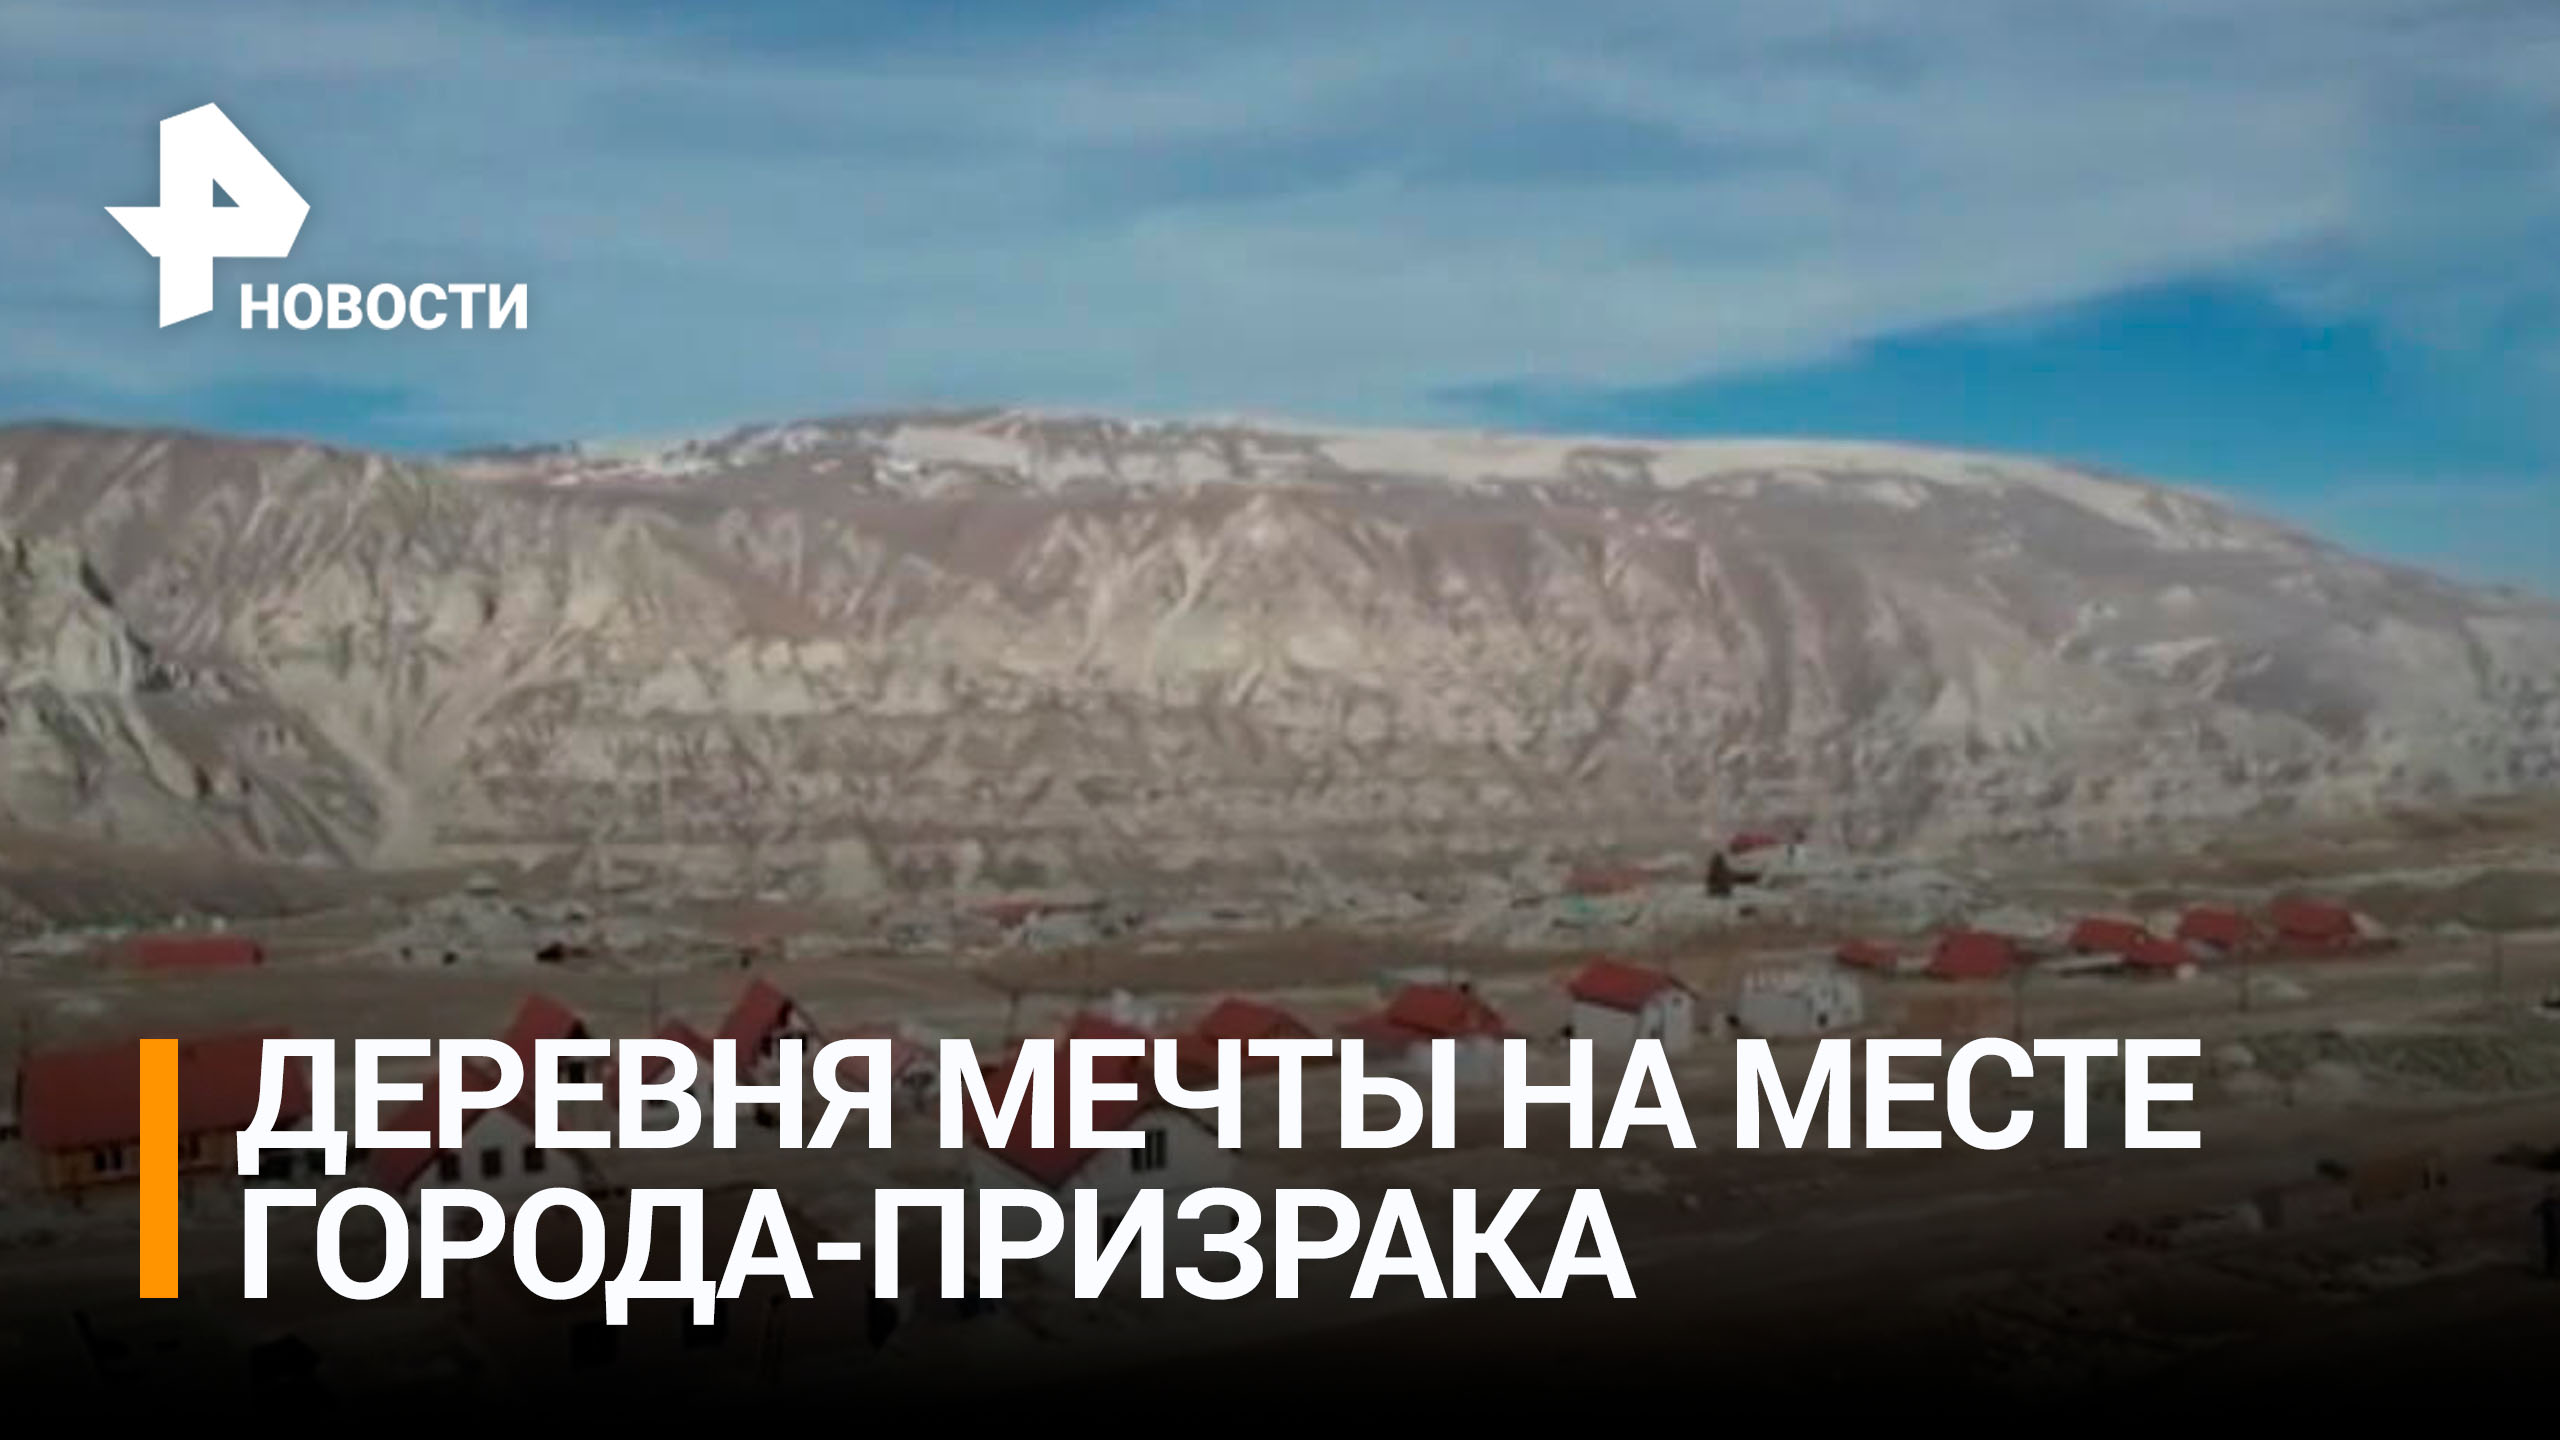 Аул-призрак в Дагестане решили превратить в деревню мечты / РЕН Новости